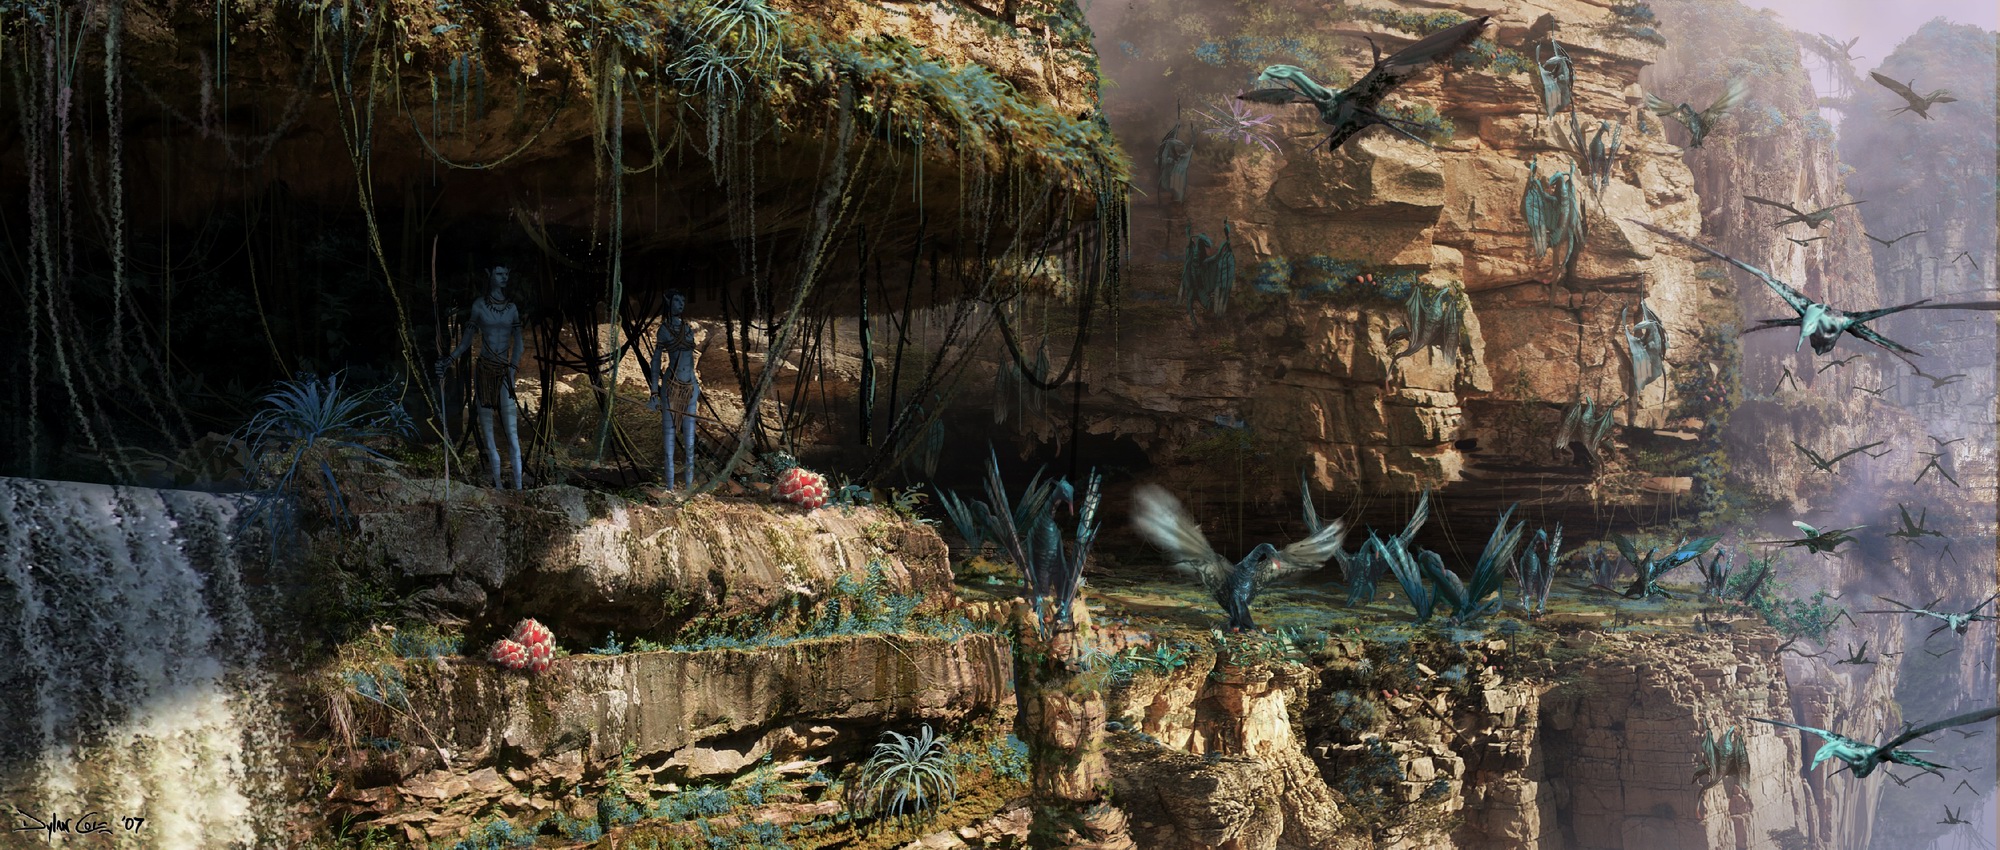 《阿凡达2》新艺术图 潘多拉环境和纳美人生活展示